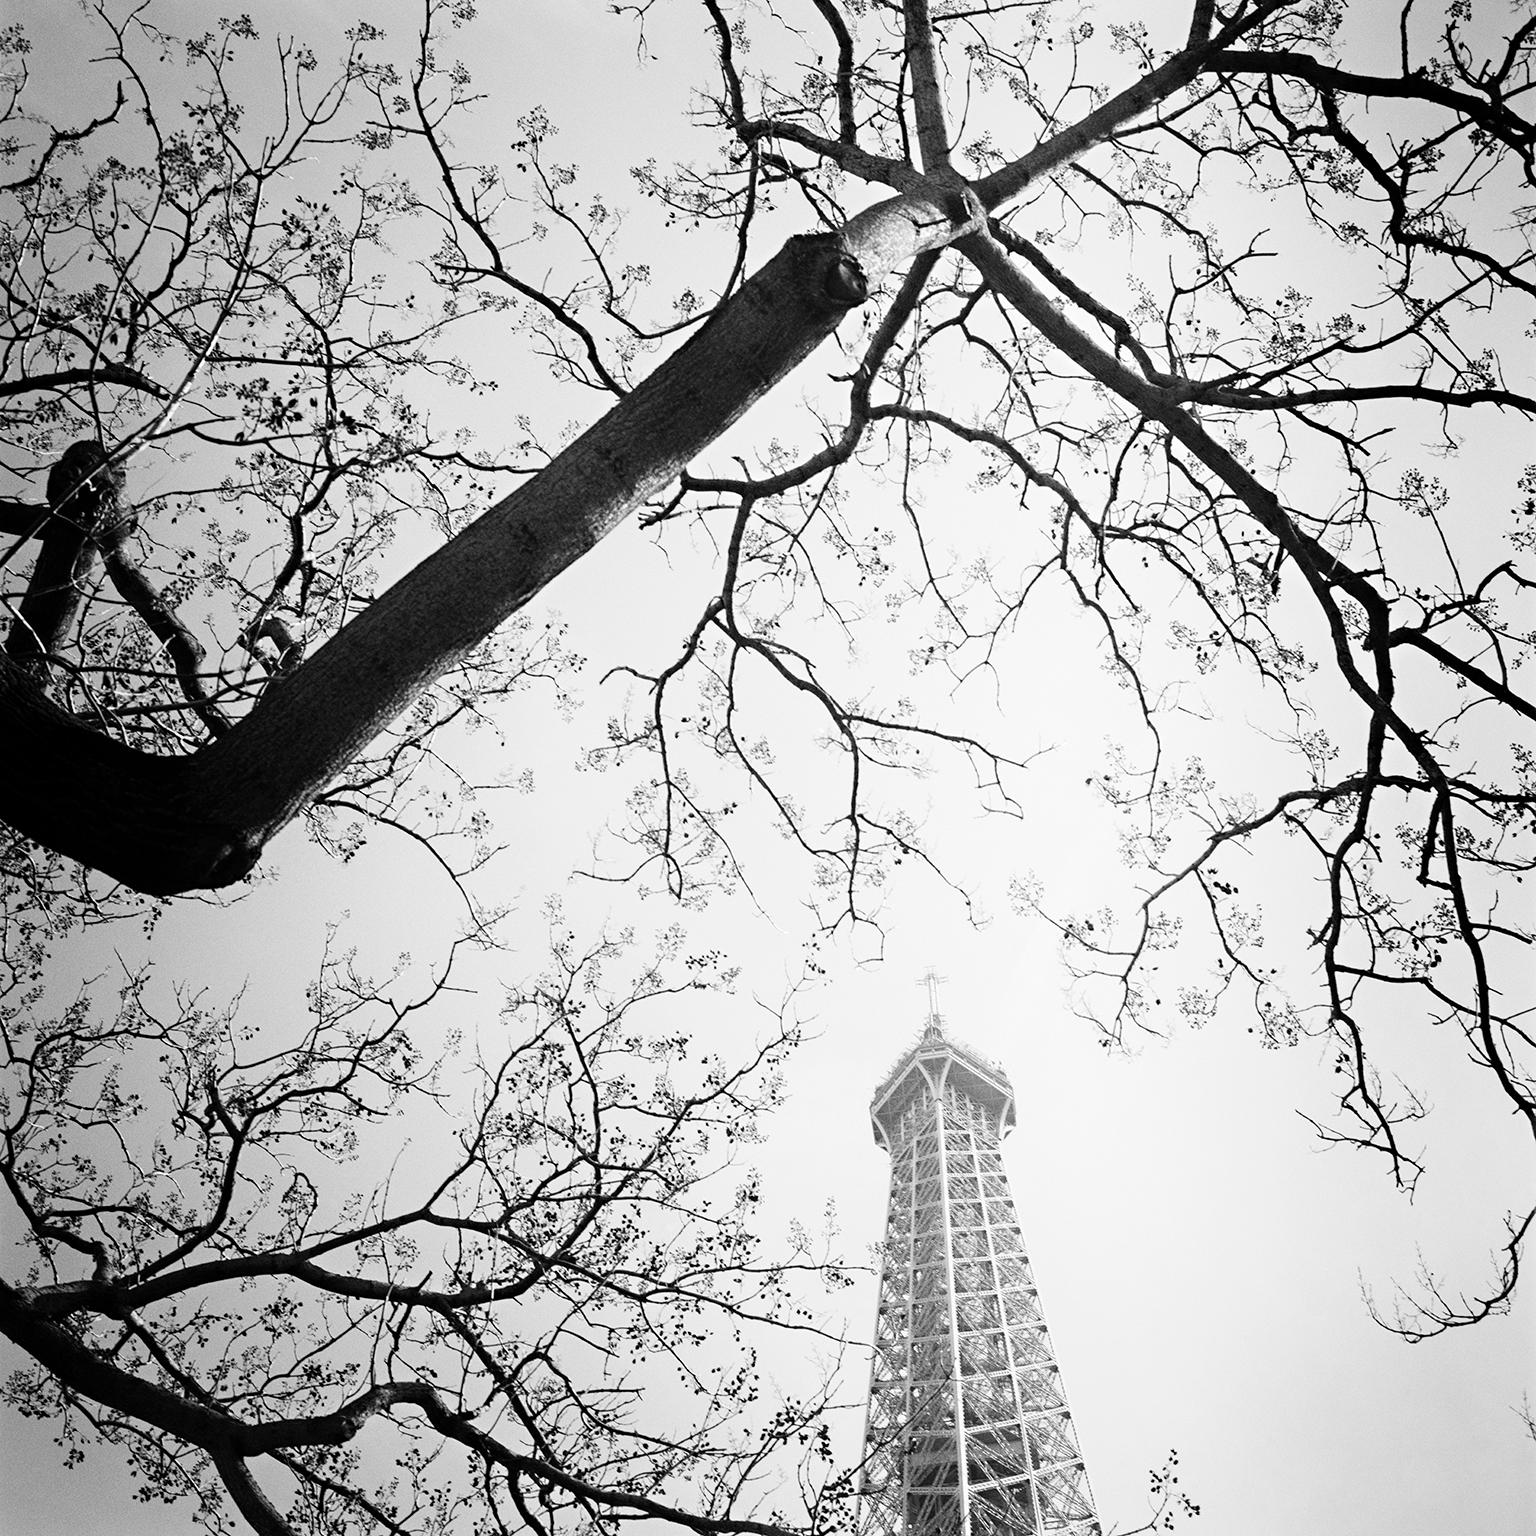 Landscape Photograph Gerald Berghammer, Ina Forstinger - Tree and the Tower, Paris, France, photographie d'art en noir et blanc, paysage